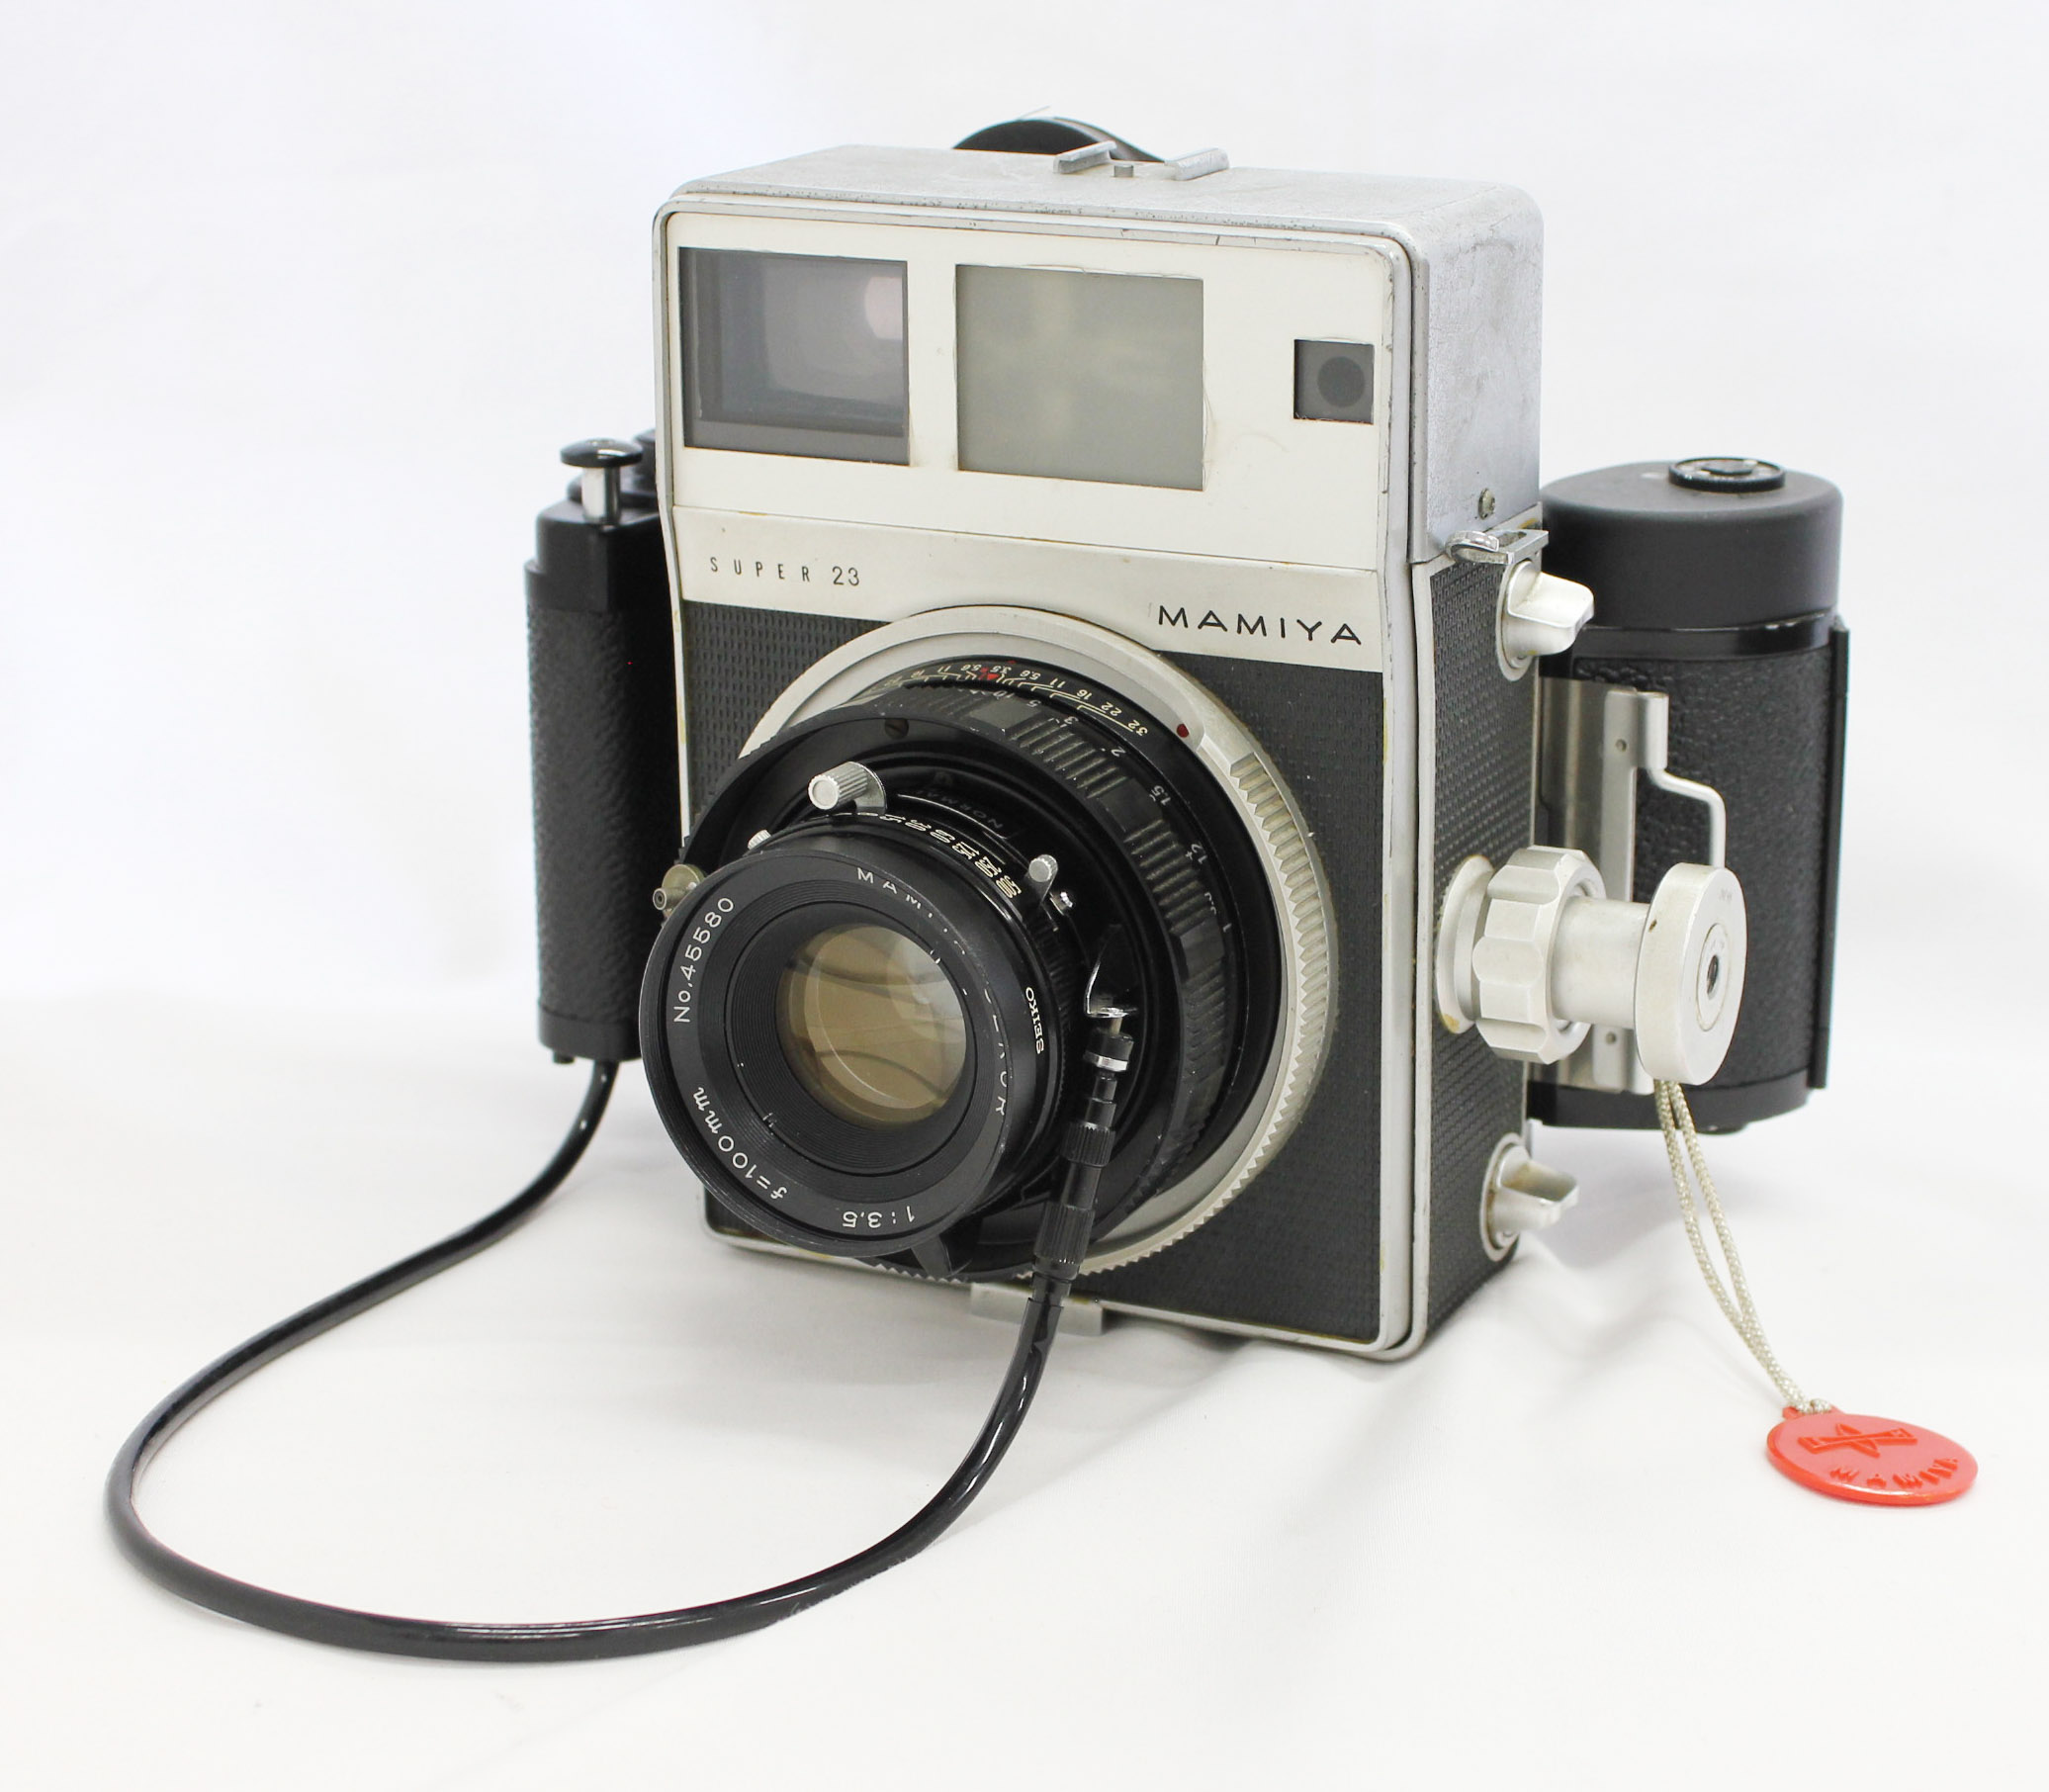 Japan Used Camera Shop | [Exc+++] Mamiya Press Super 23 with Mamiya-Sekor 100mm F/3.5 & 6x9 Film Back from Japan